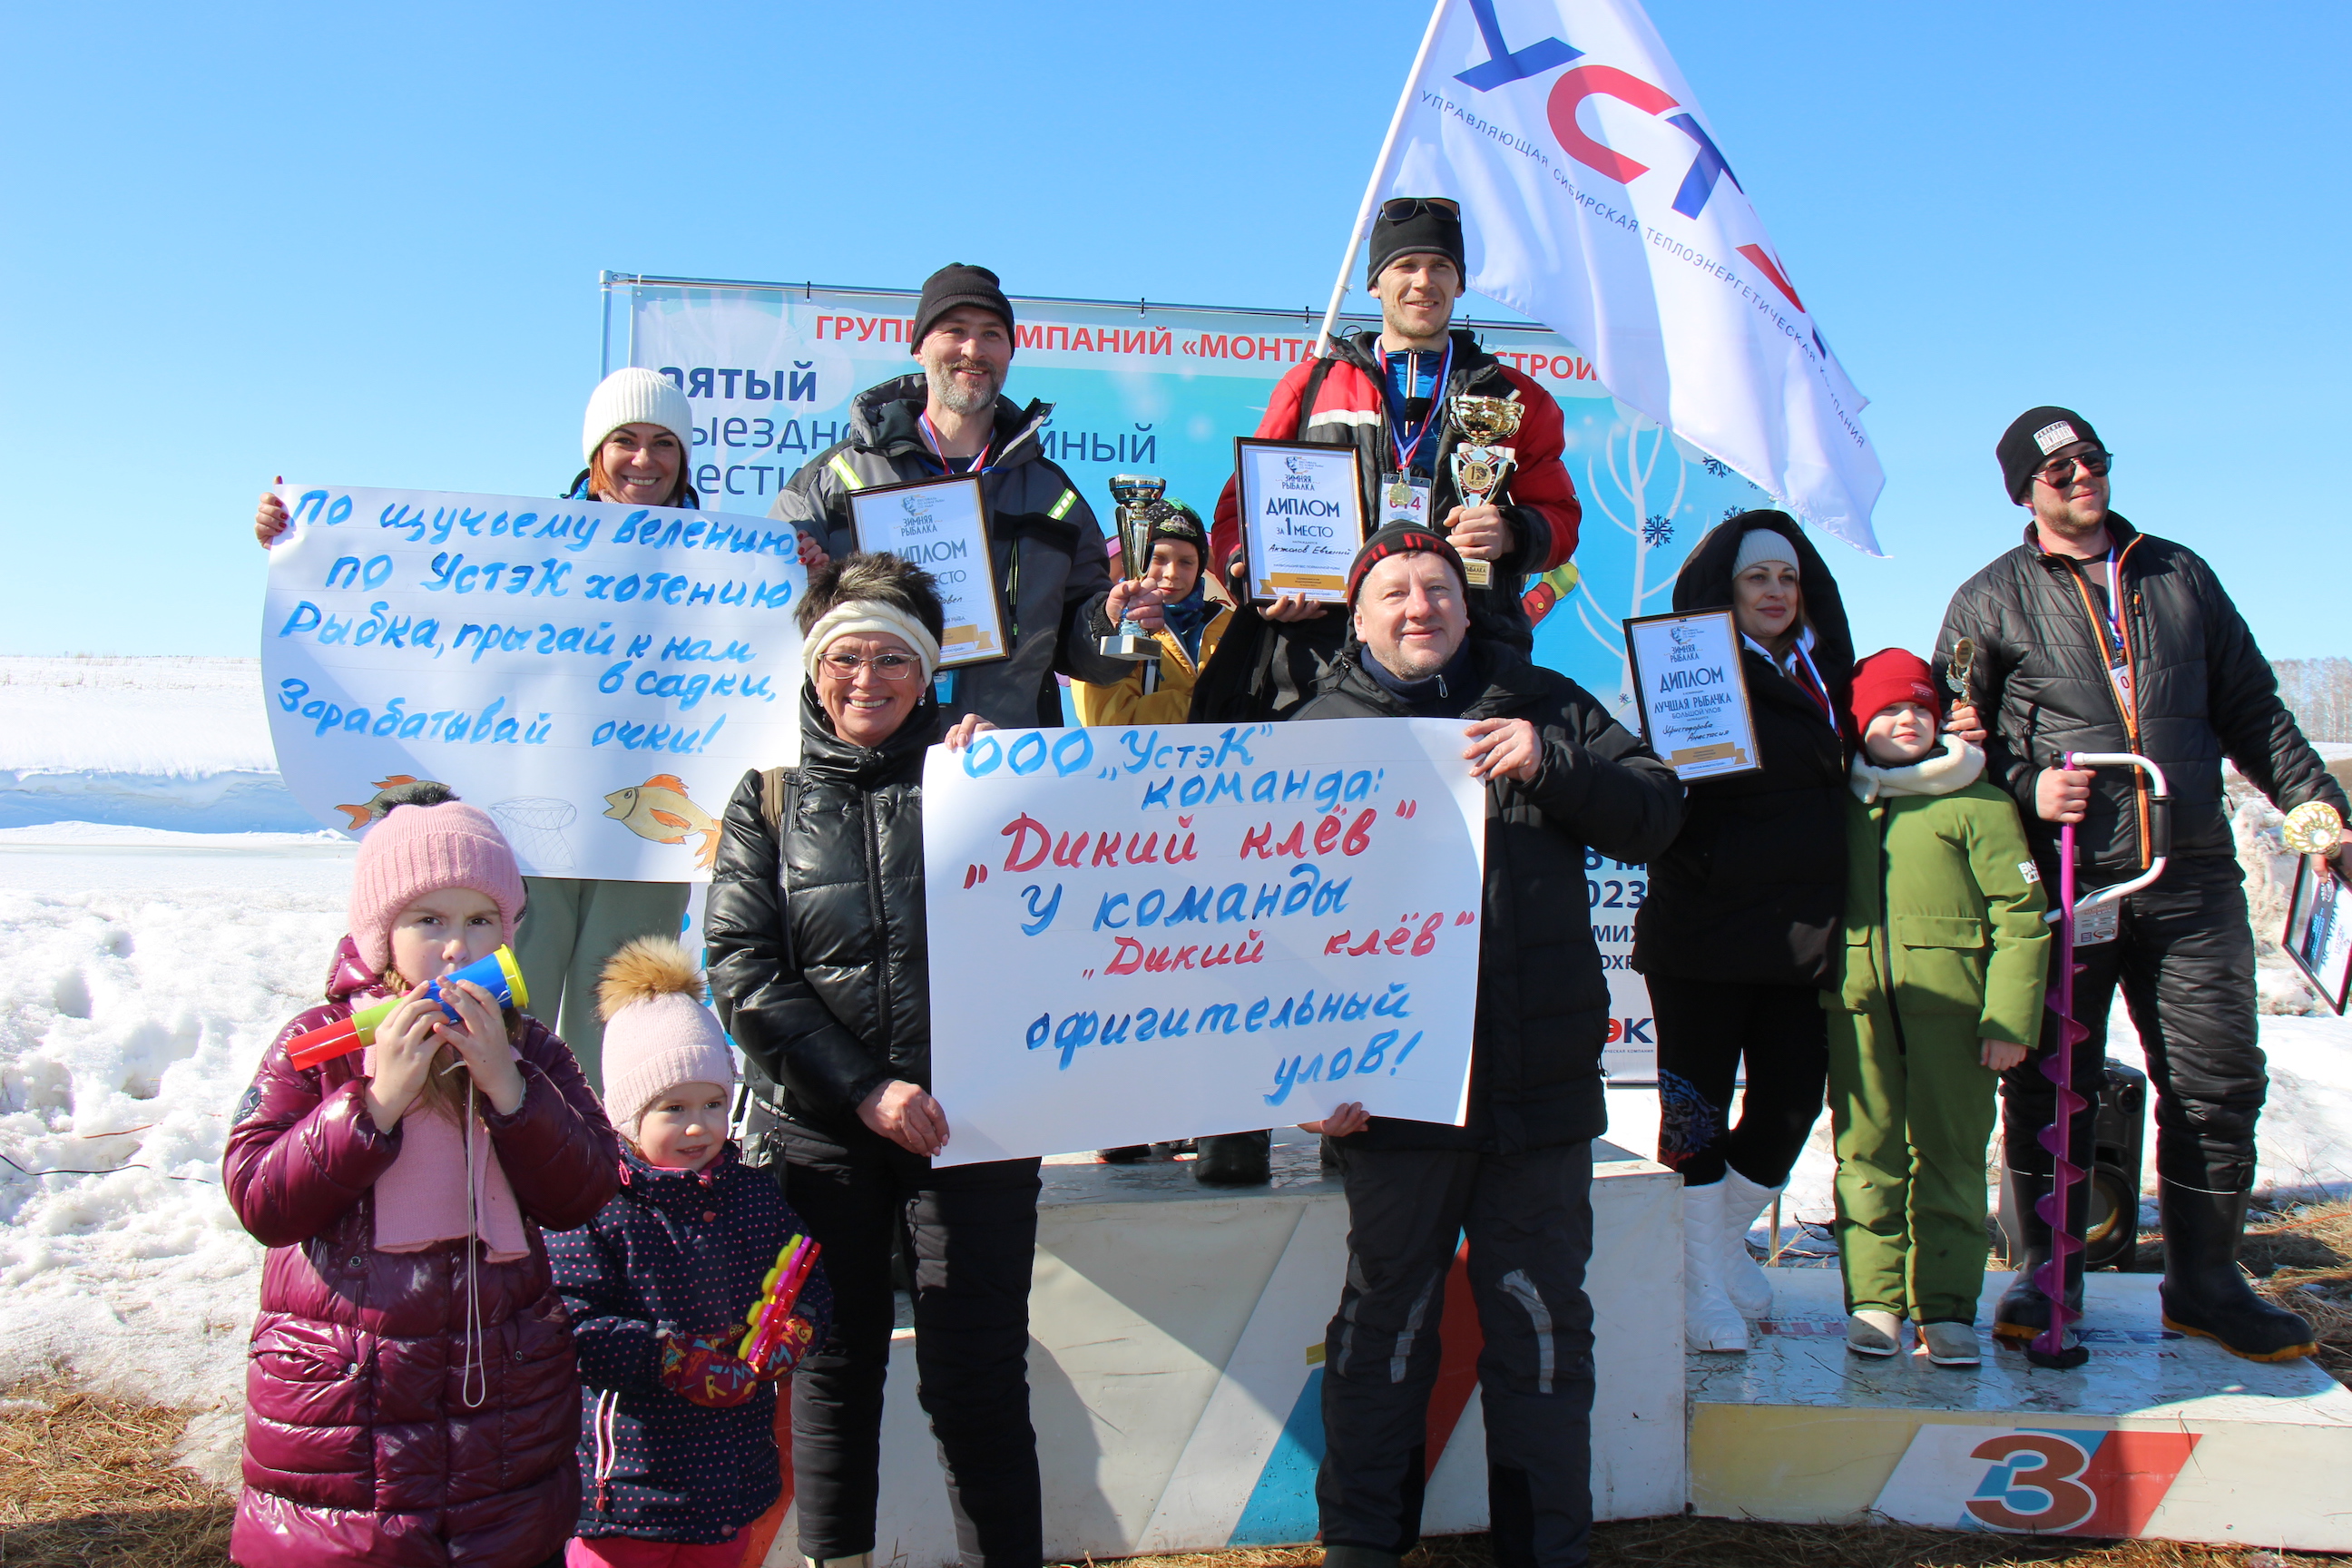 Команда ООО «УстэК» приняла активное участие в фестивале «Зимняя рыбалка» и взяла несколько призов. 